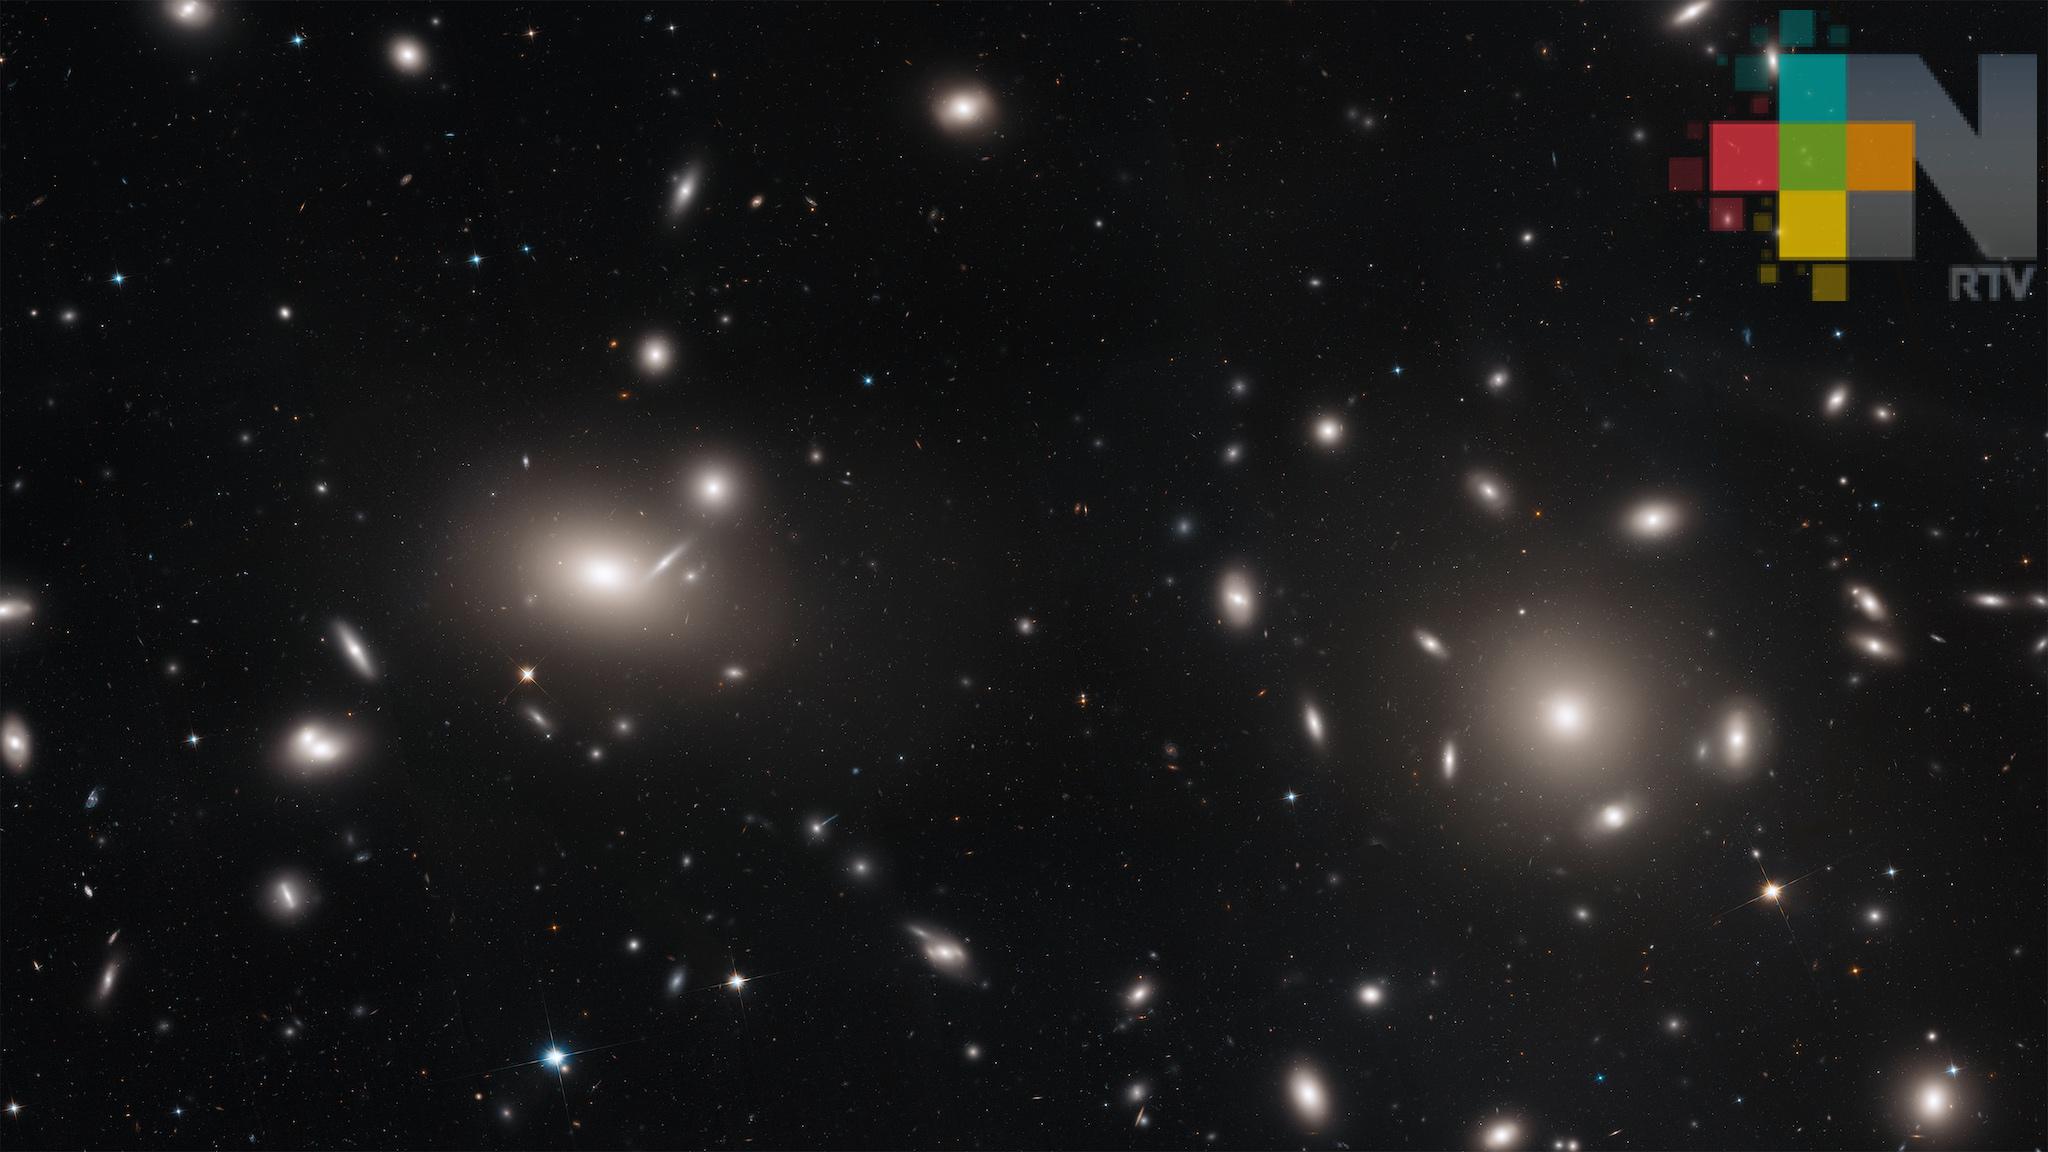 Telescopio espacial Hubble fotografía cúmulos de galaxias